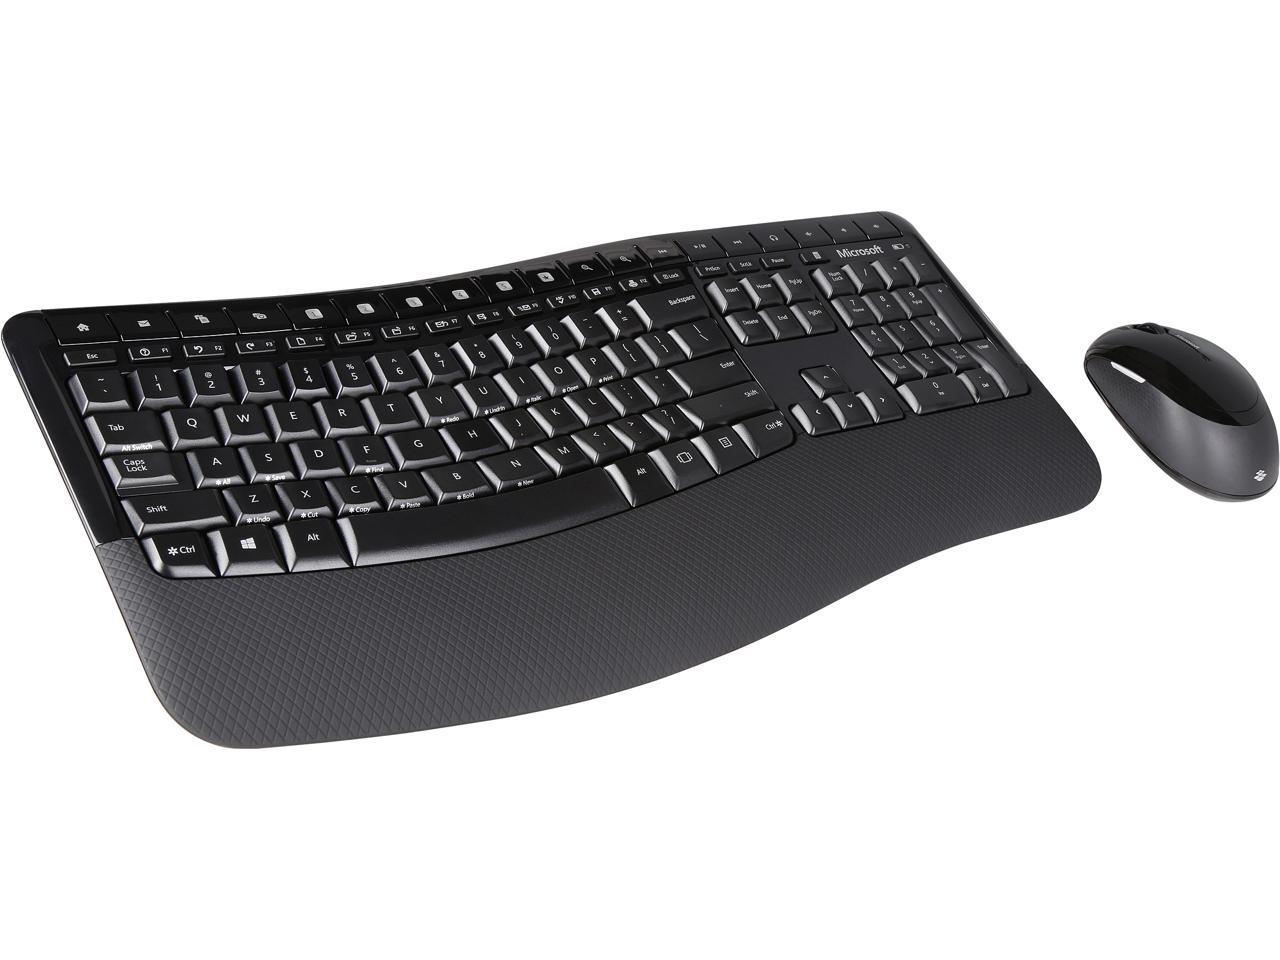 microsoft wireless comfort keyboard 5050 drivers